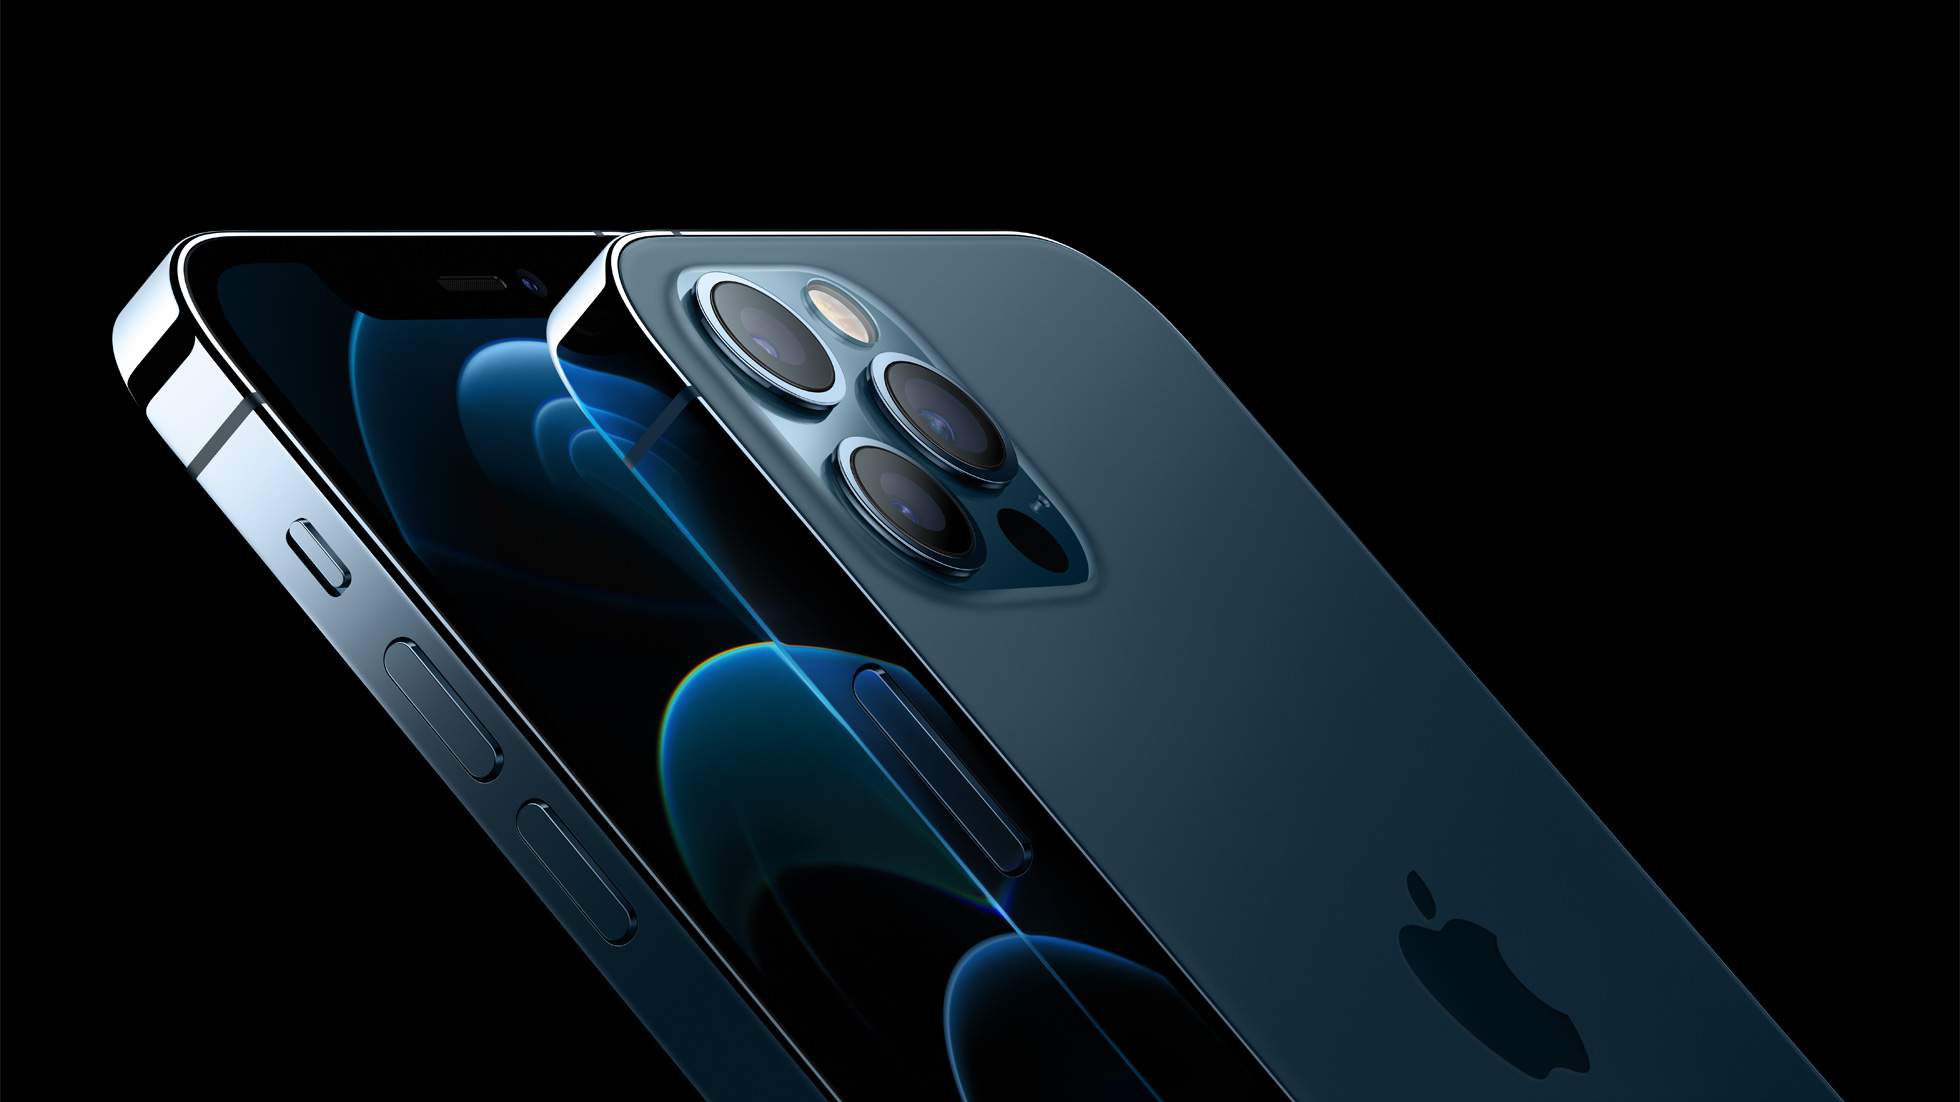 Изворотливое решение Apple может стоить китайской компании 30 миллионов заказов на OLED-панели для iPhone 14